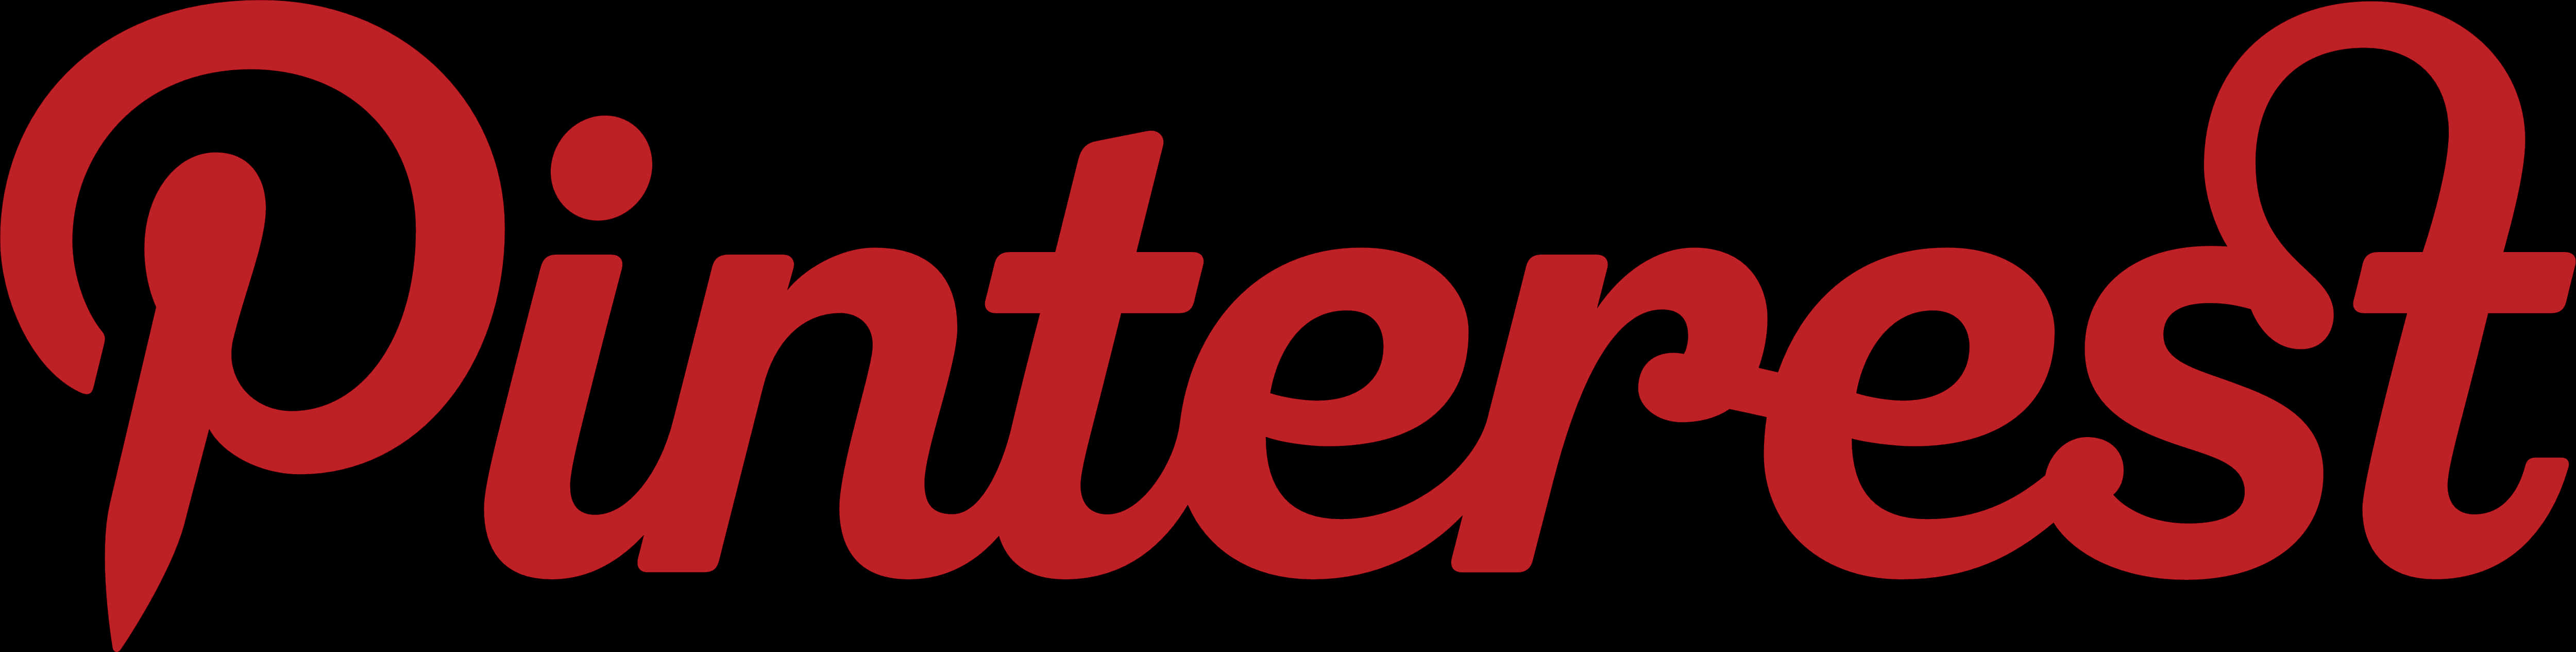 Pinterest Logo Red Script